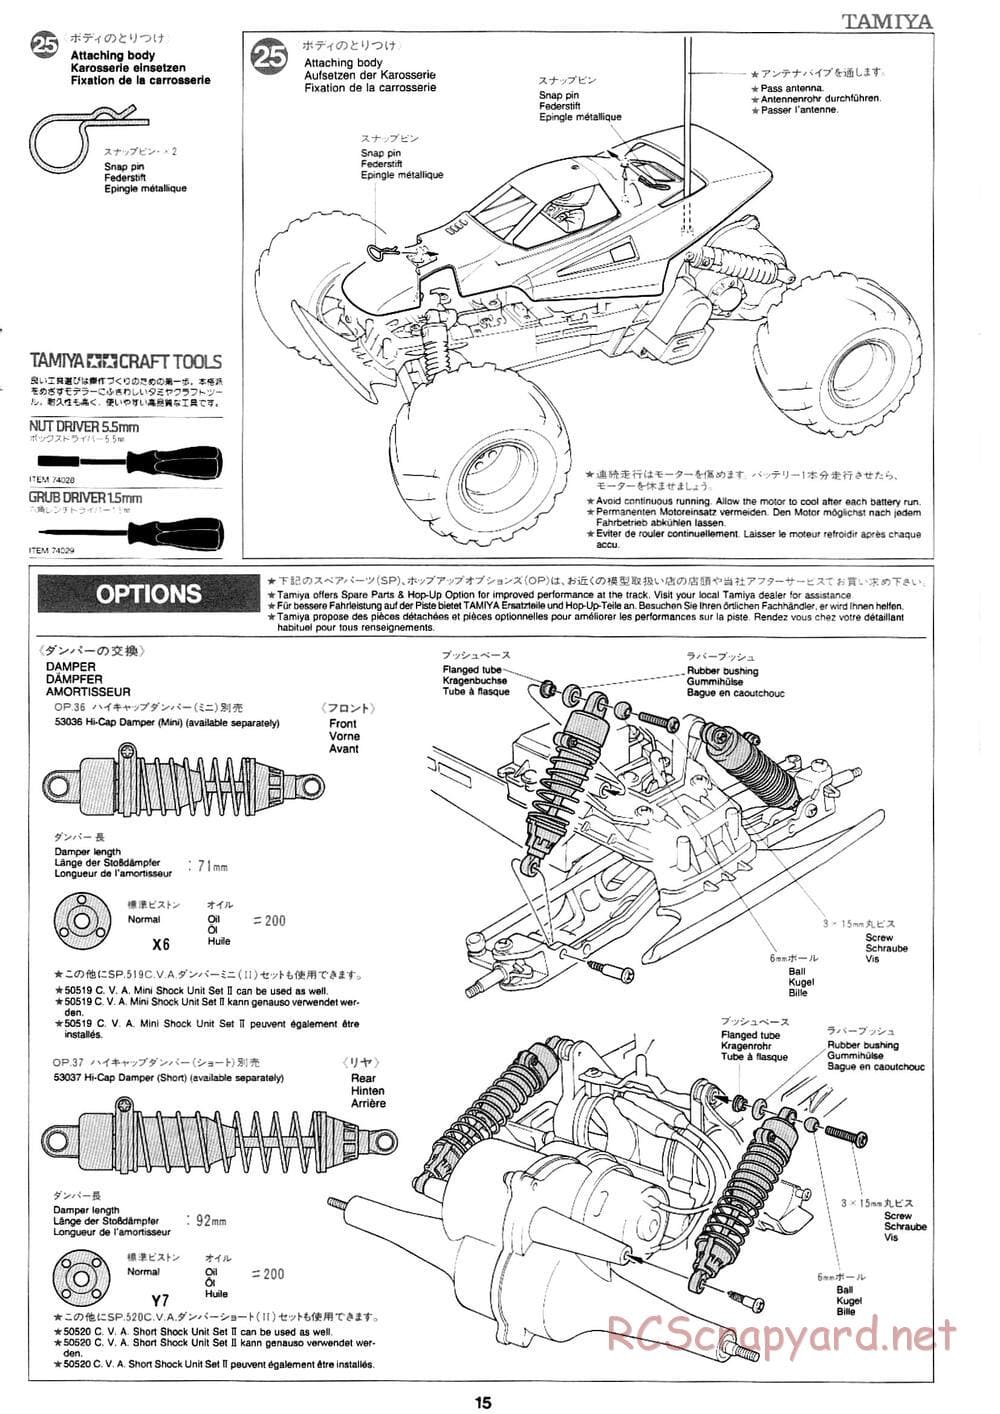 Tamiya - Mad Bull Chassis - Manual - Page 15